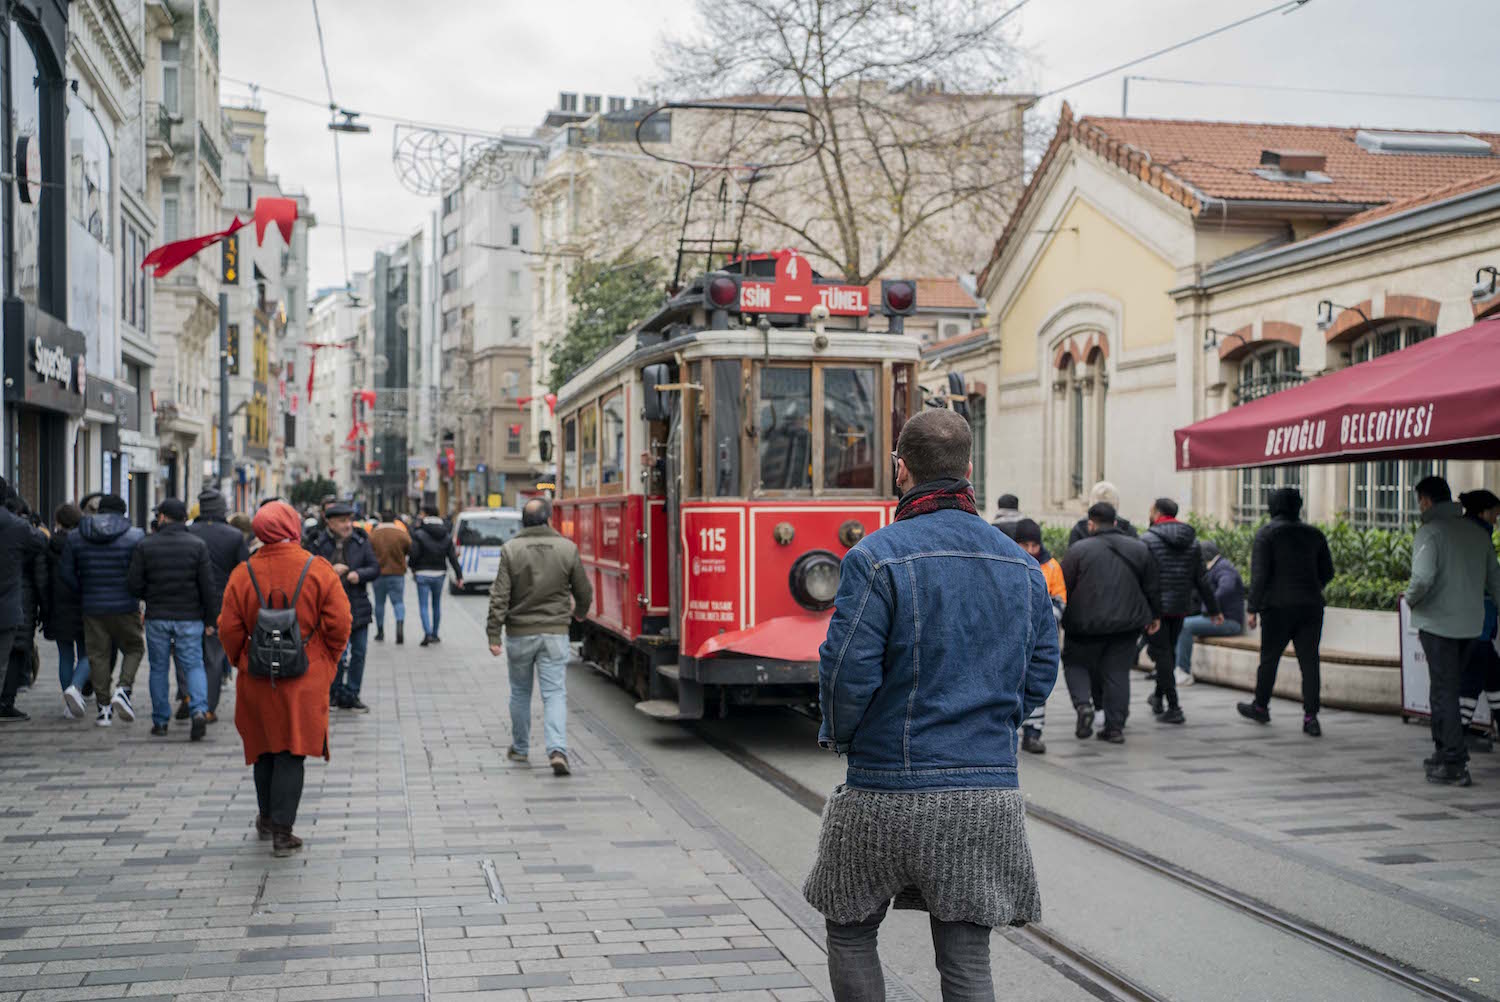 L’avenue Istiklal est l’une des plus connues d’Istanbul. On peut voir l’institut français à droite.